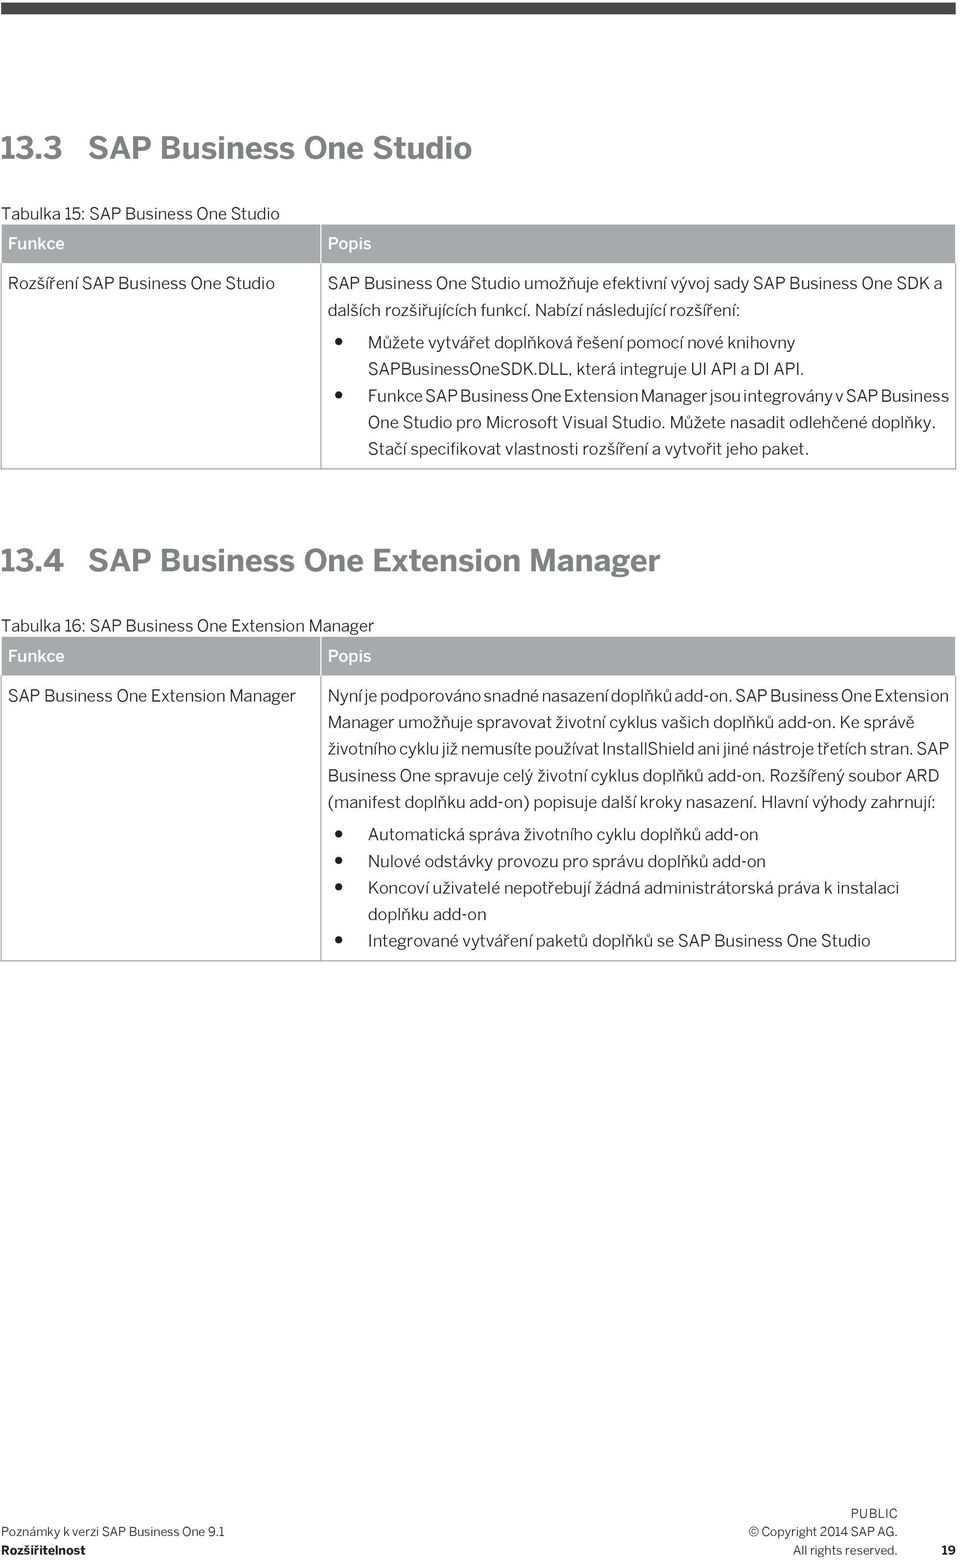 SAP Business One Extension Manager jsou integrovány v SAP Business One Studio pro Microsoft Visual Studio. Můžete nasadit odlehčené doplňky.